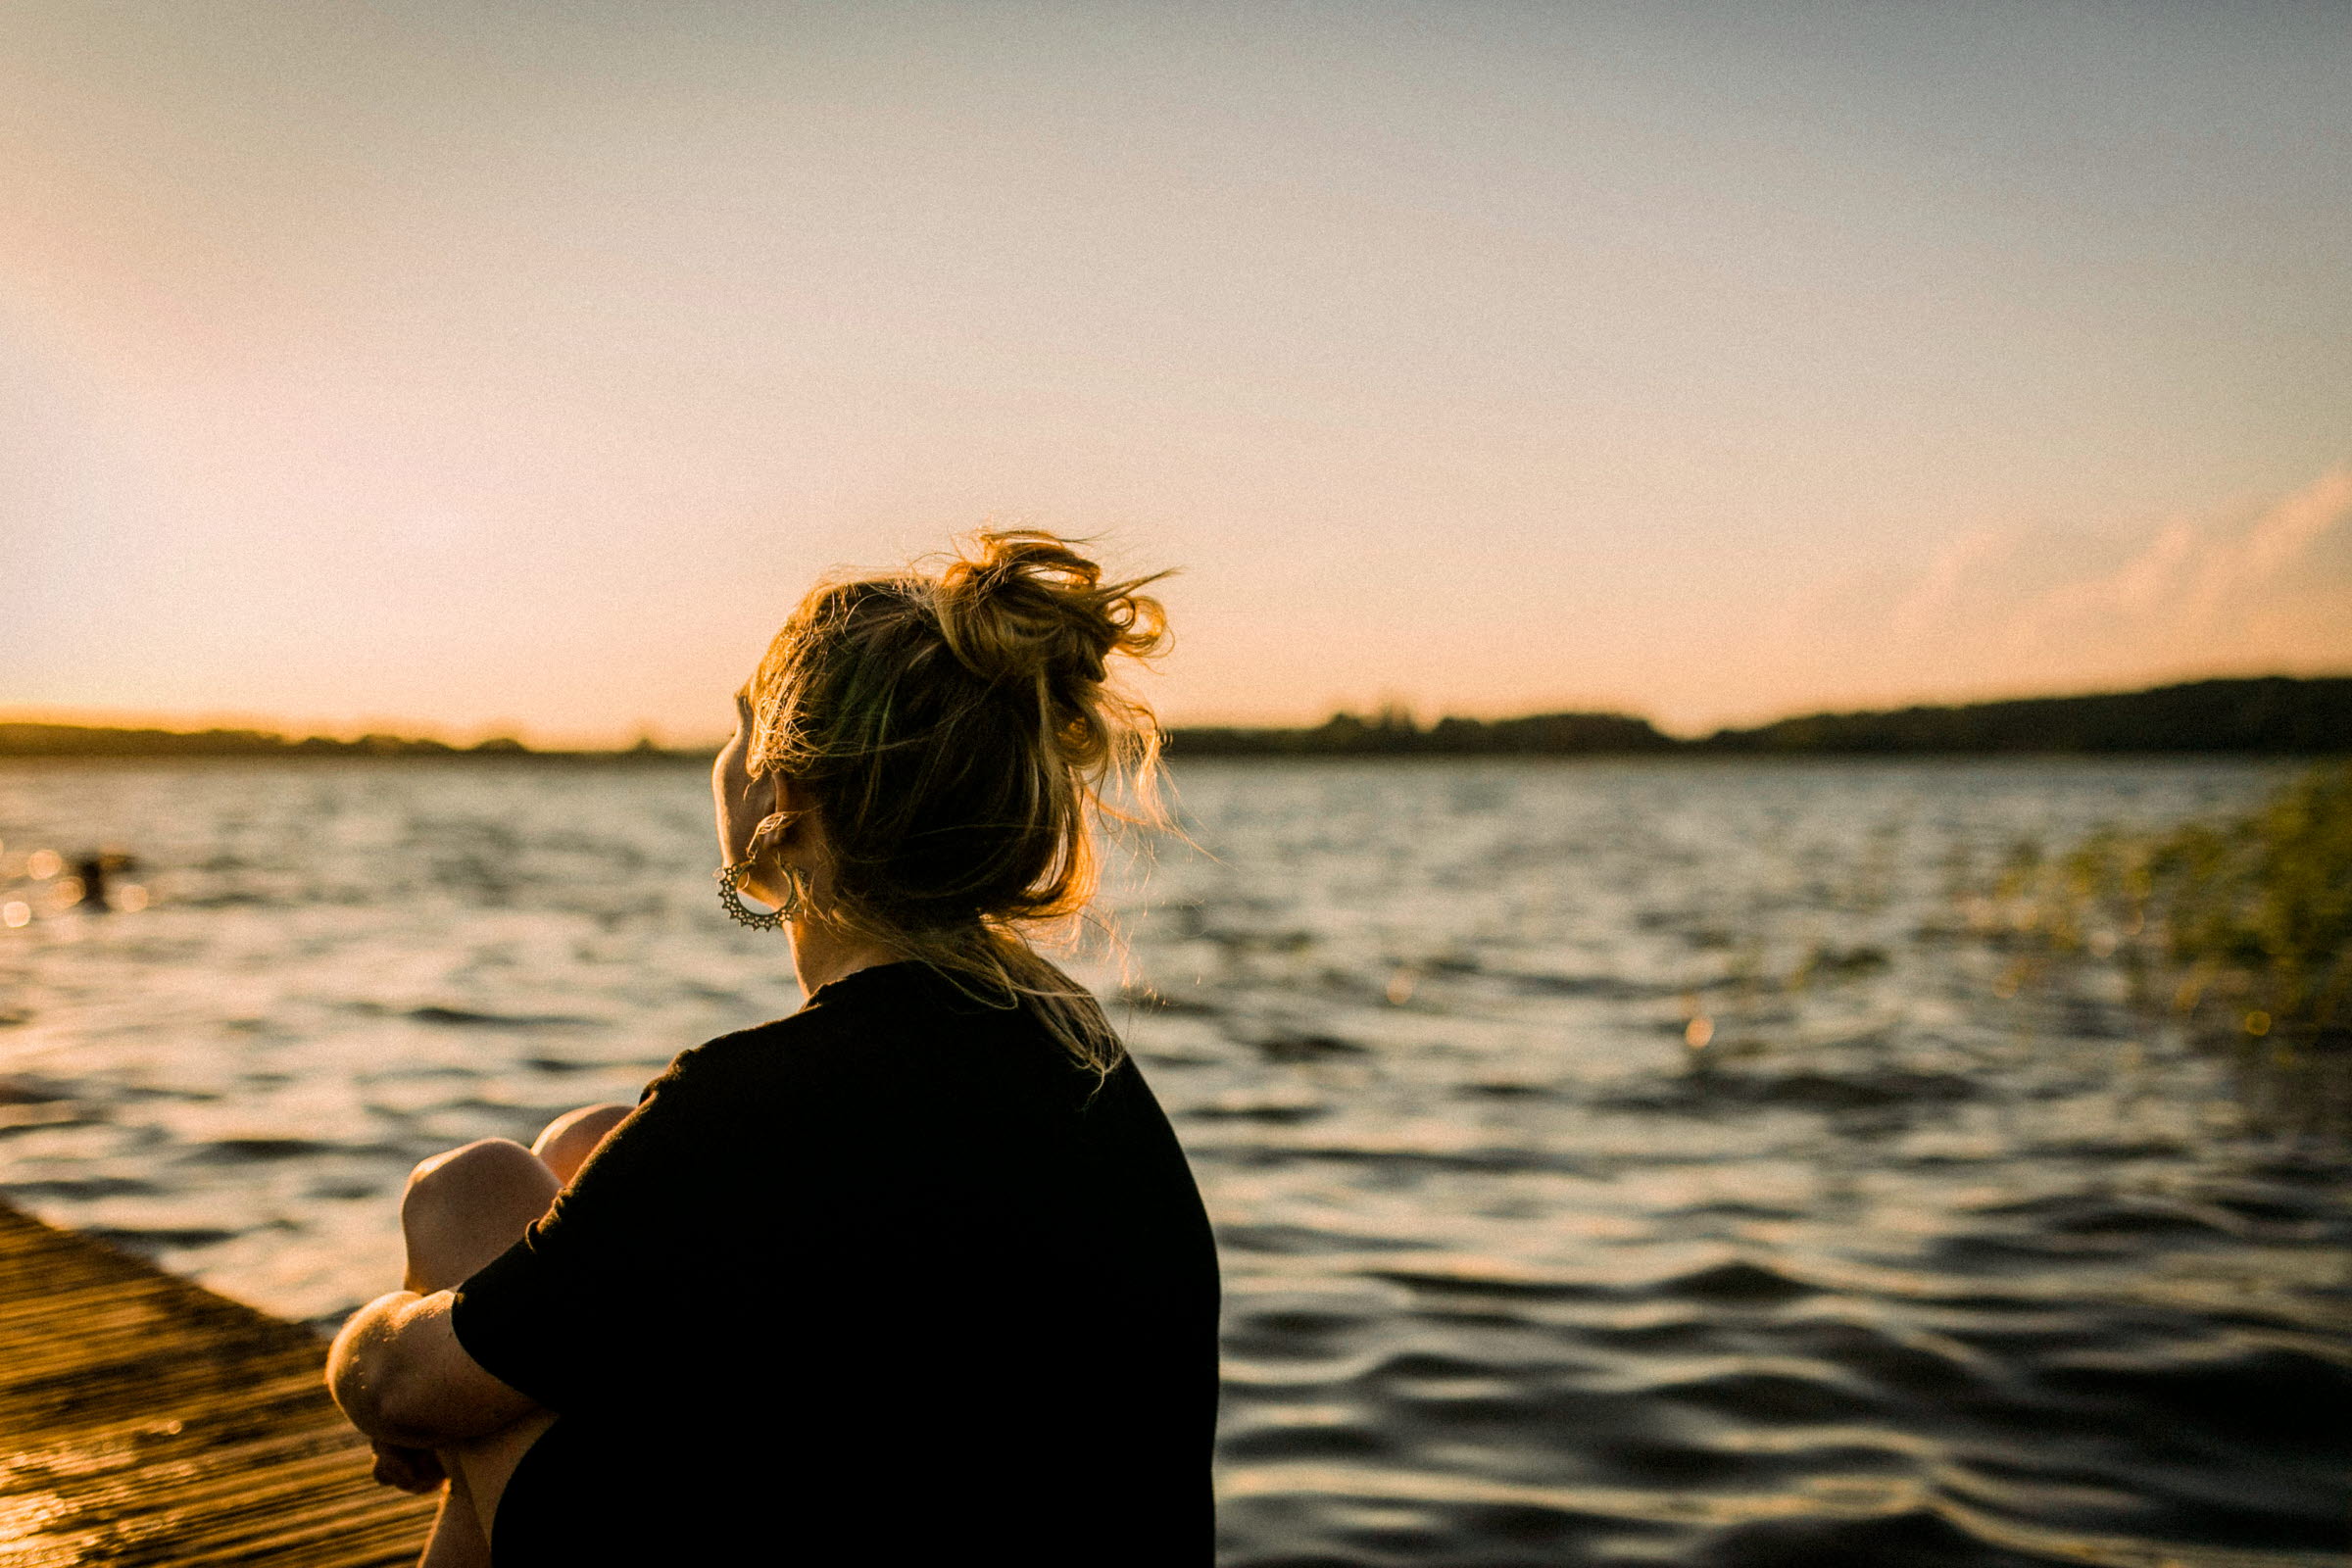 En kvinna i svart tröja och uppsatt hår sitter på en brygga och blickar ut över en sjö.